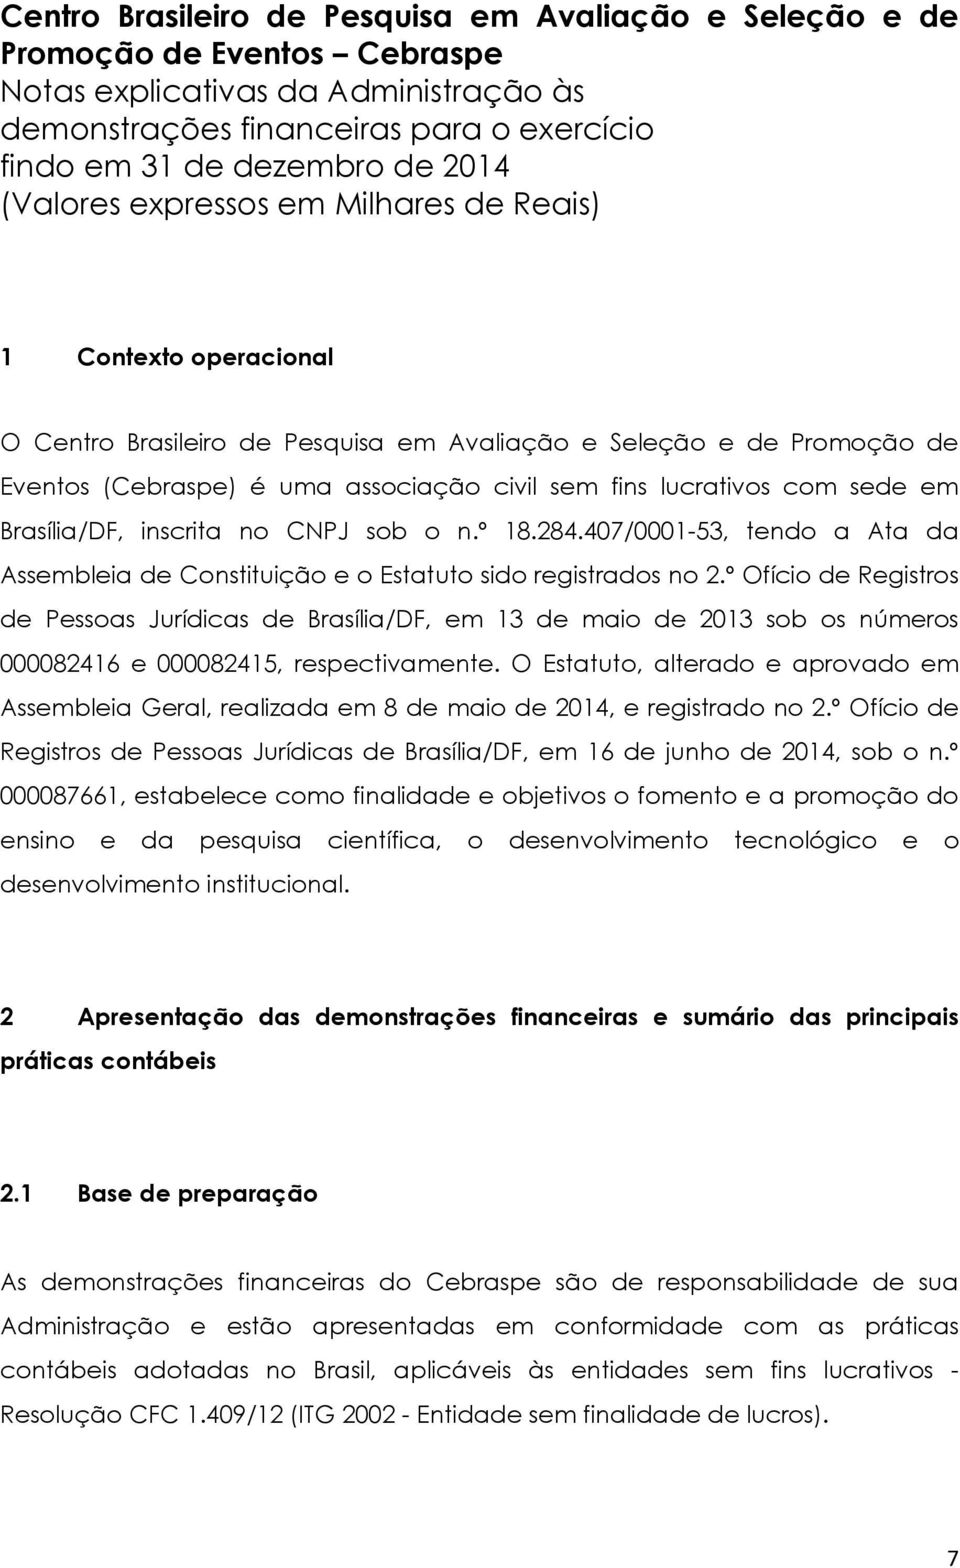 lucrativos com sede em Brasília/DF, inscrita no CNPJ sob o n.º 18.284.407/0001-53, tendo a Ata da Assembleia de Constituição e o Estatuto sido registrados no 2.